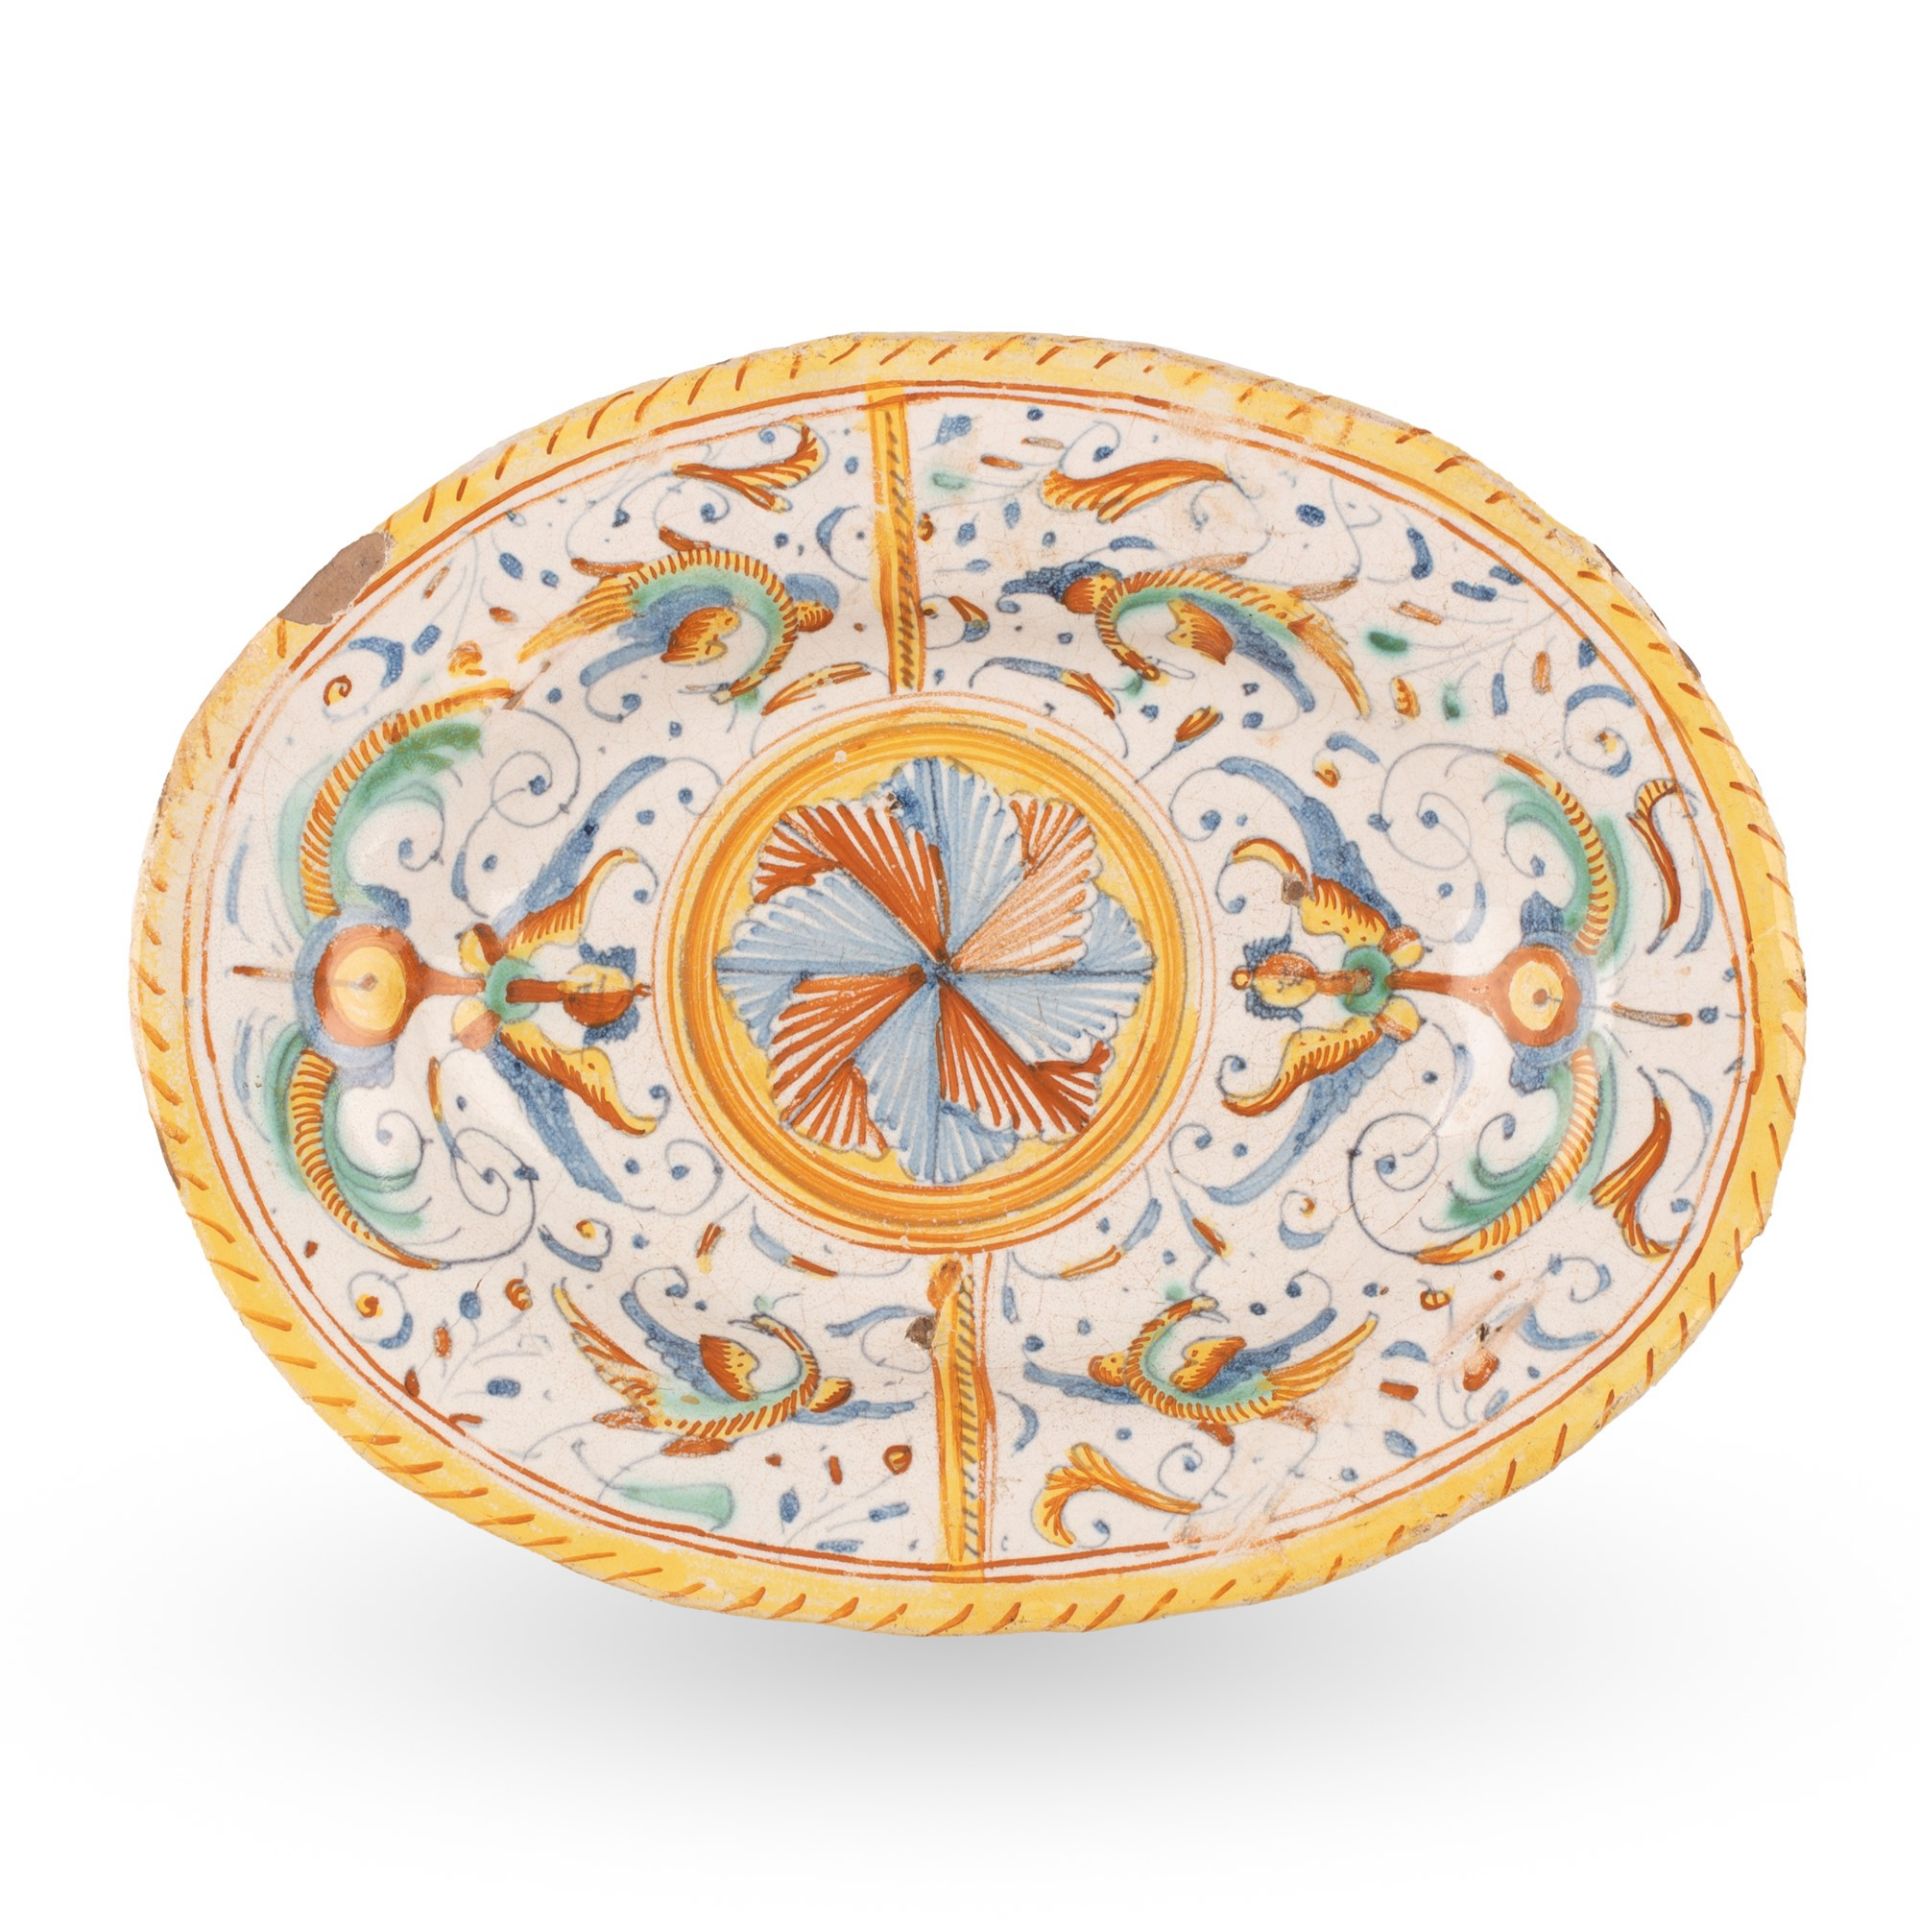 Vassoio ovale in maiolica decorato in policromia con motivi floreali e grottesche. Al centro motivo 